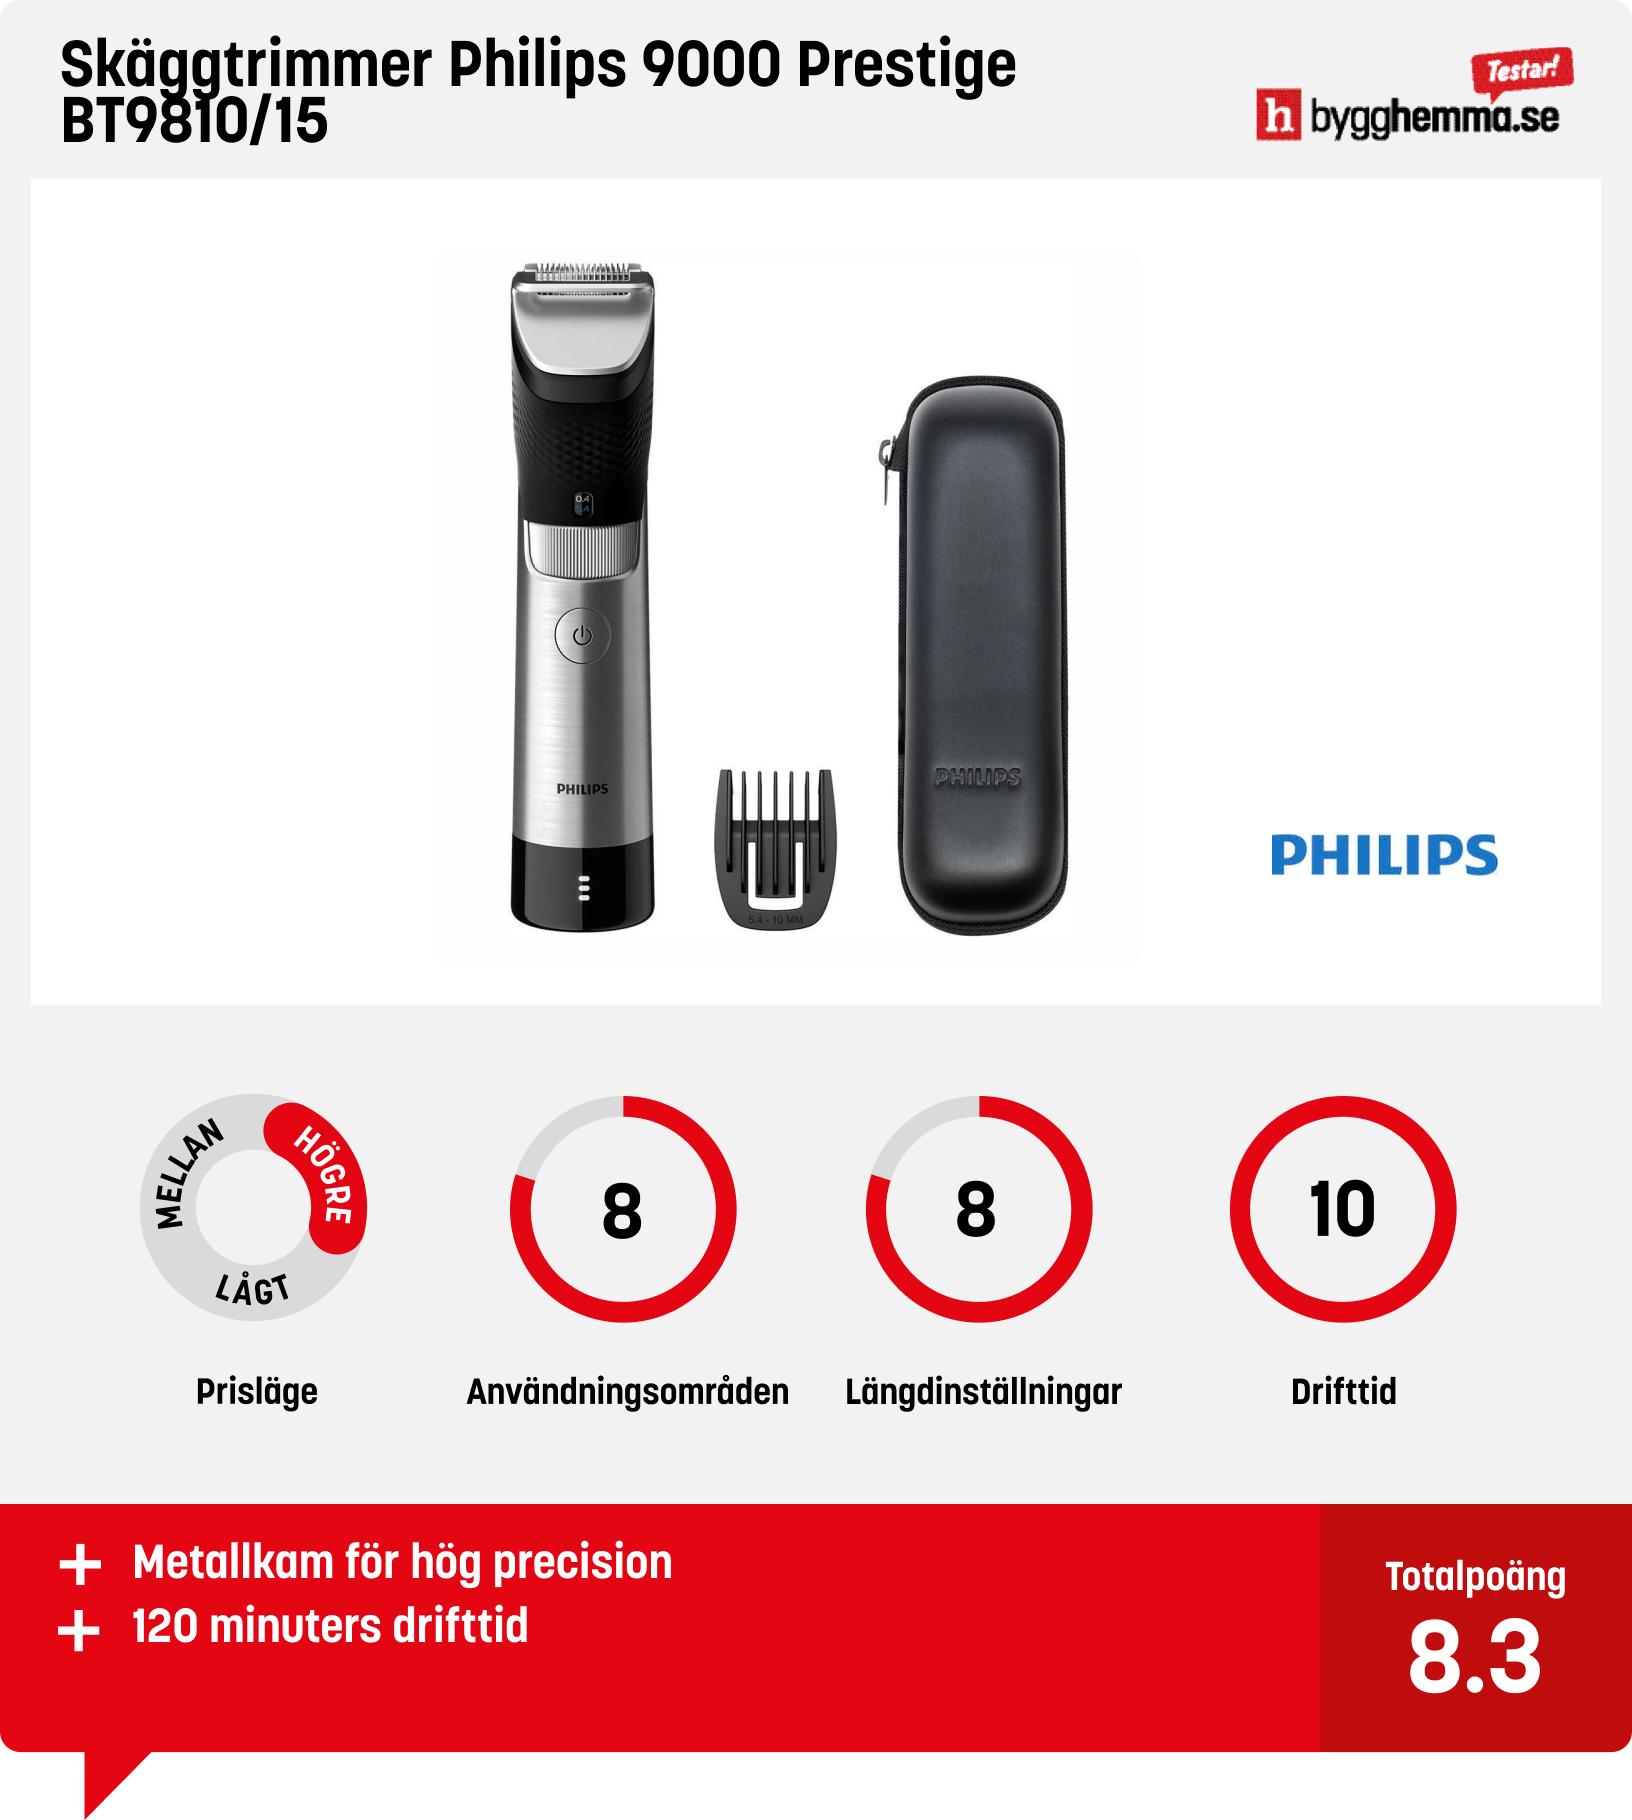 Skäggtrimmer bäst i test - Skäggtrimmer Philips 9000 Prestige BT9810/15